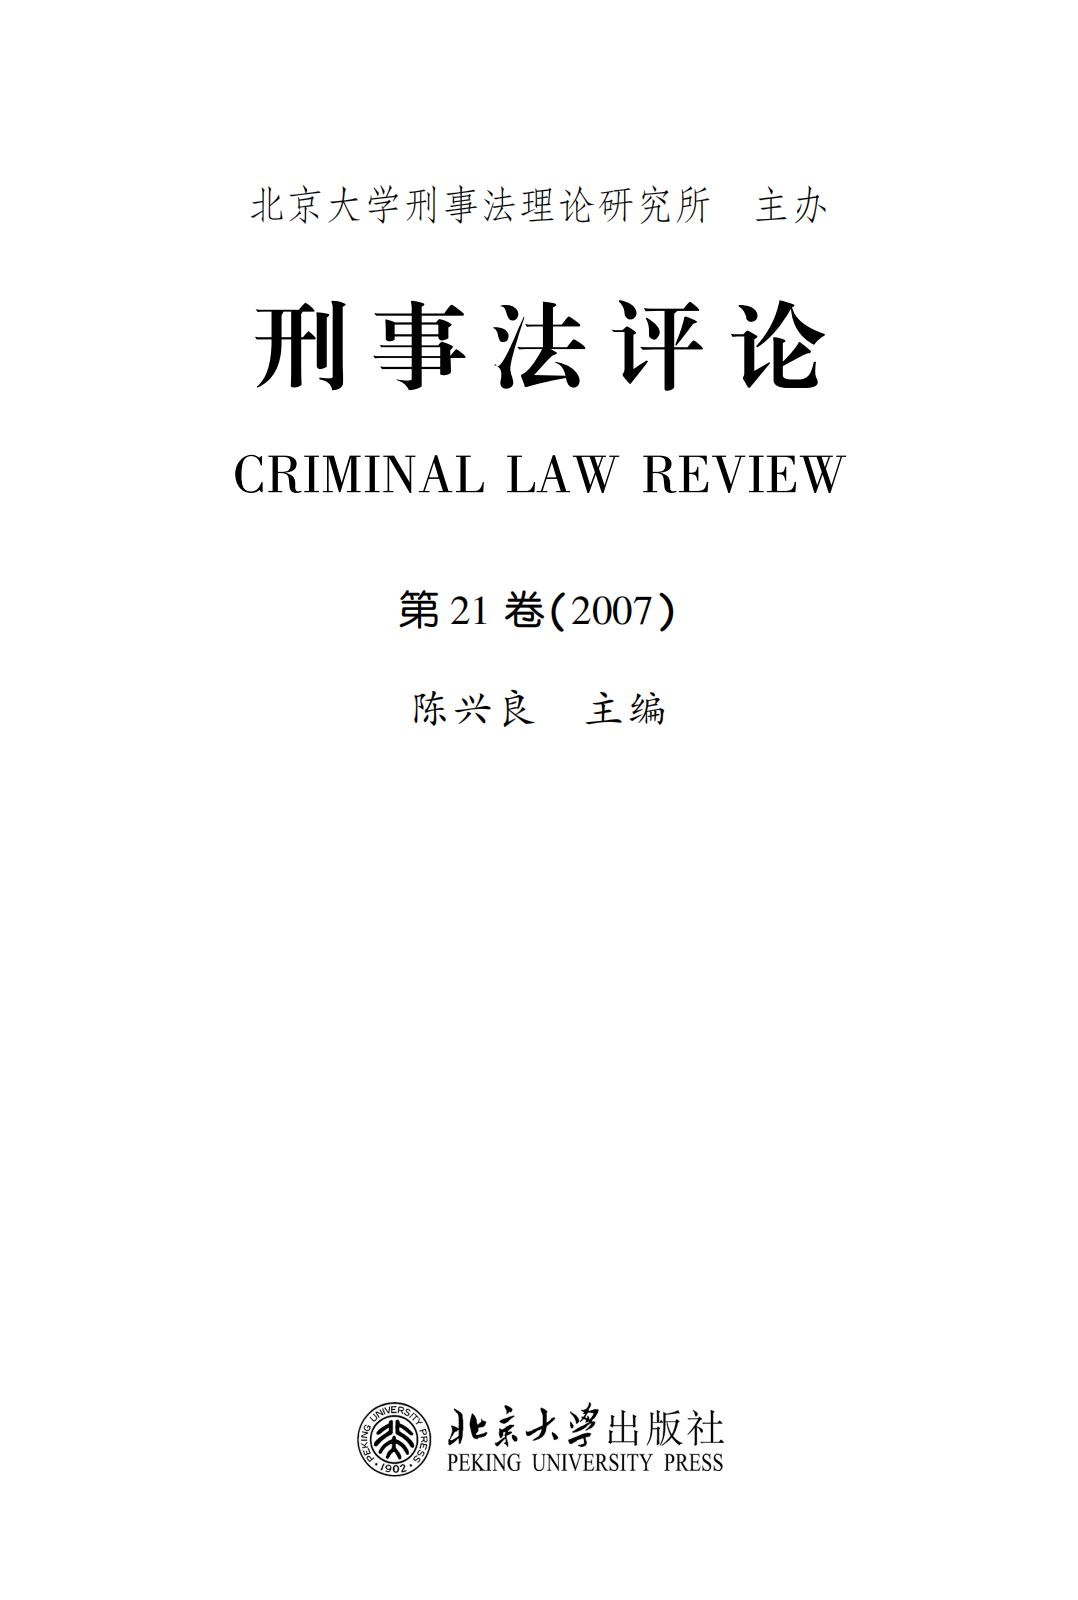 提取自刑事法评论（第21卷）_00.png